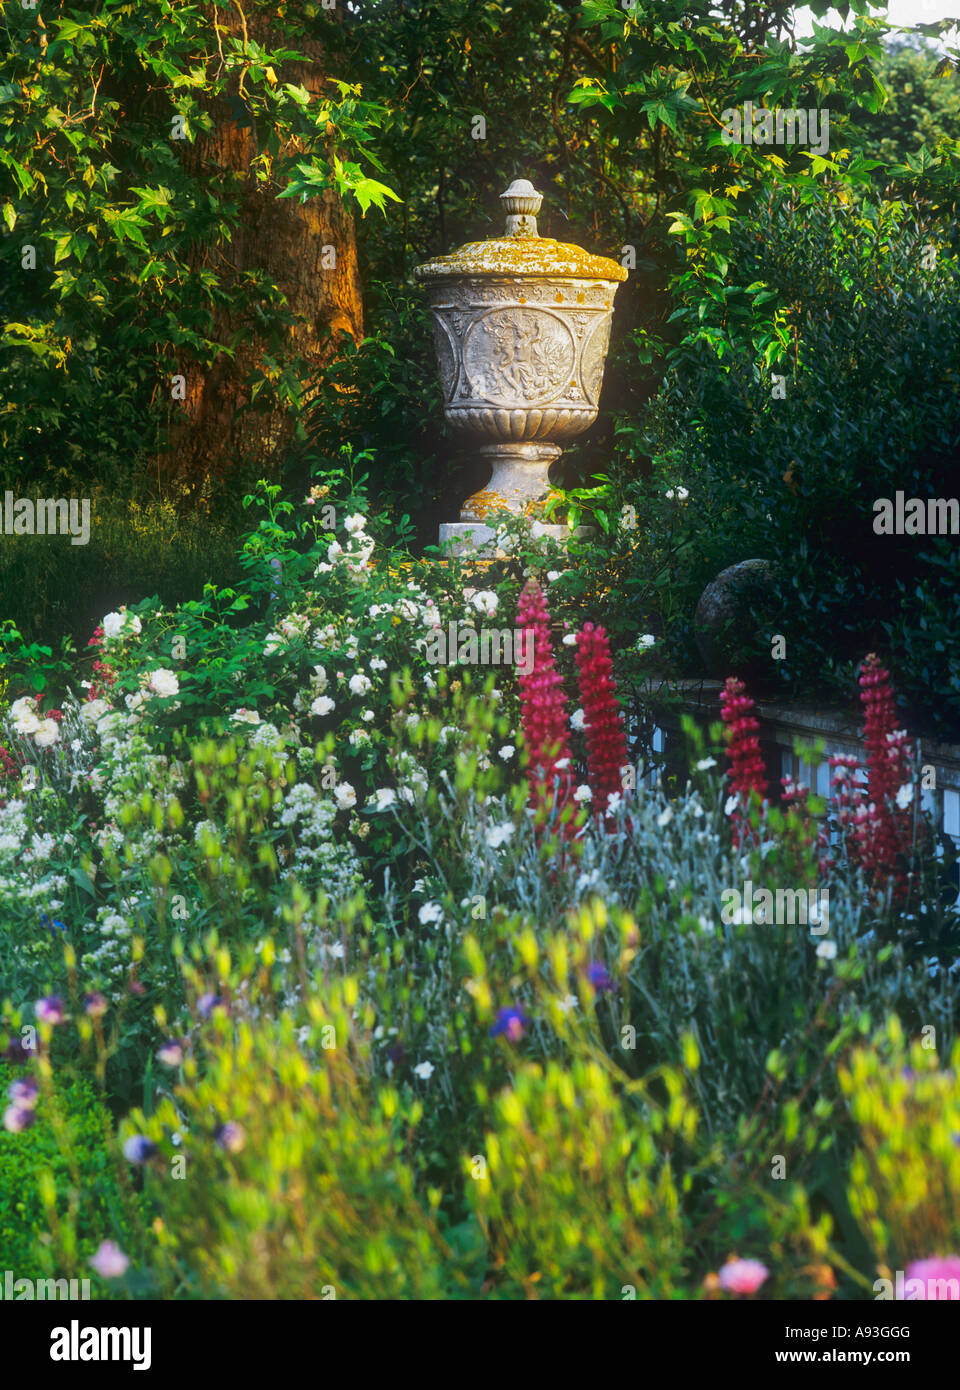 Lupinen und Wildblumen in einem grünen, farbenfrohen Garten mit verwitterter alter dekorativer Steinurne auf dem englischen Land sind ein Blickfang dahinter Stockfoto